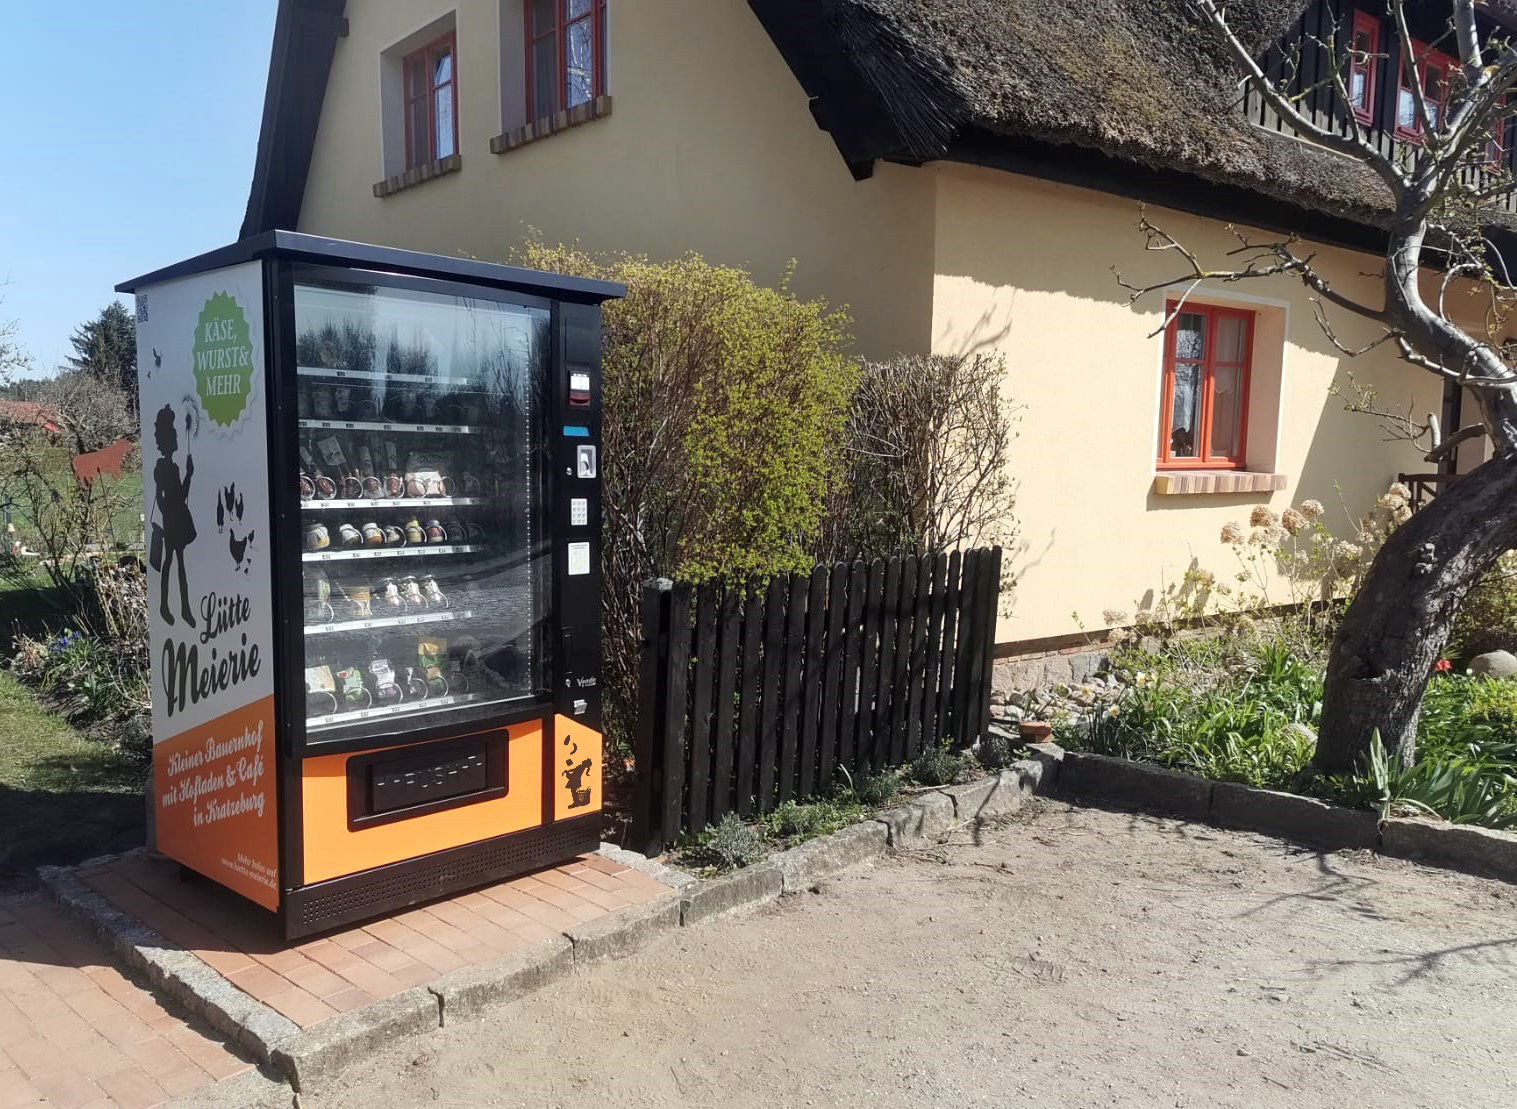 Verkaufs-automat der Lütten Meierie Kratzeburg in der Dorfstraße